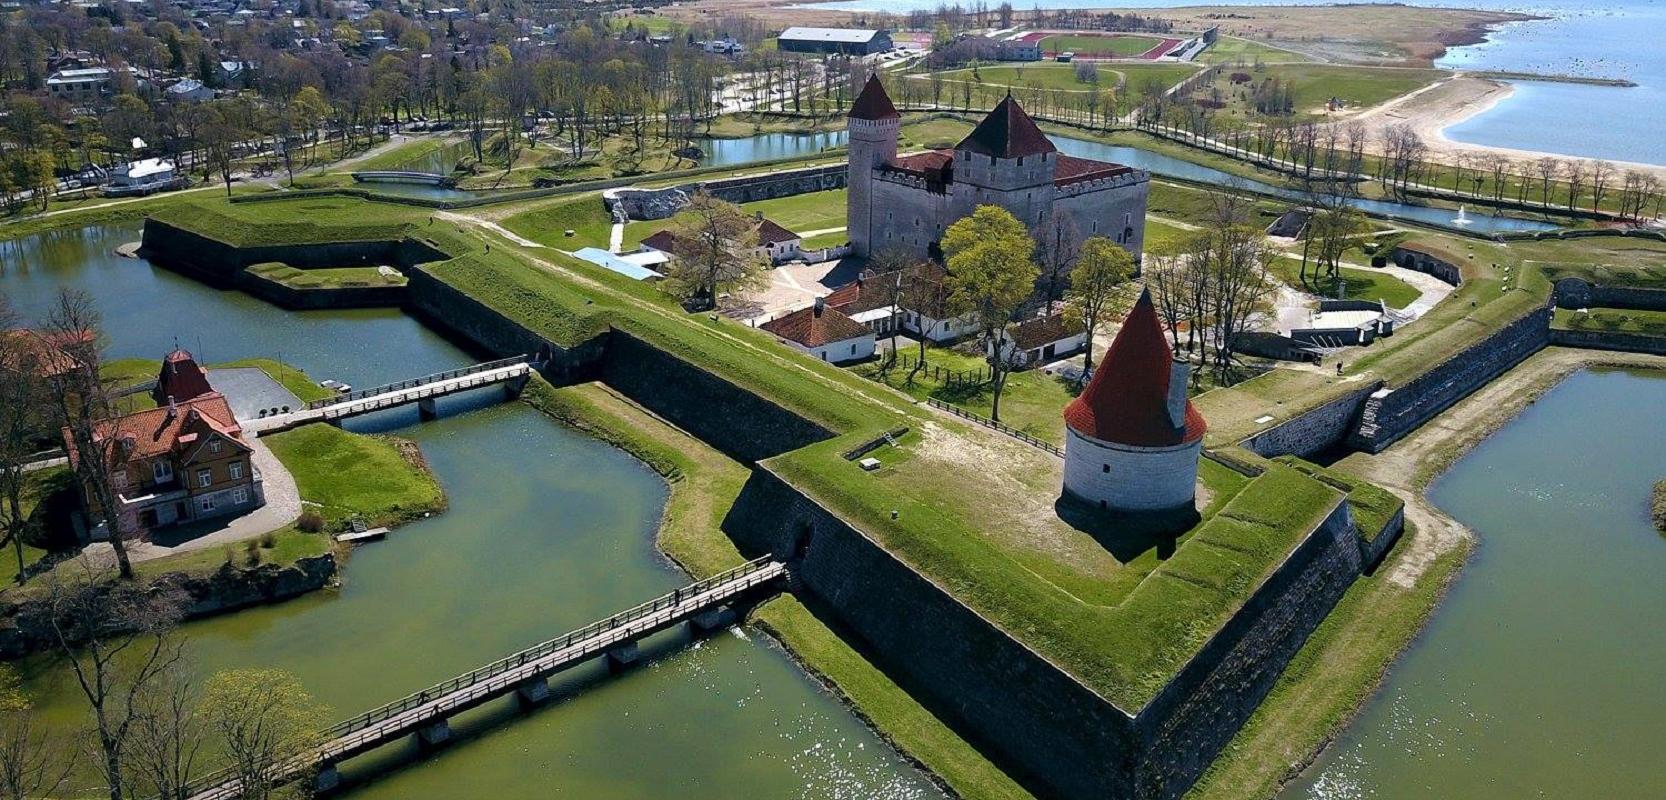 Saaremaa Muuseum